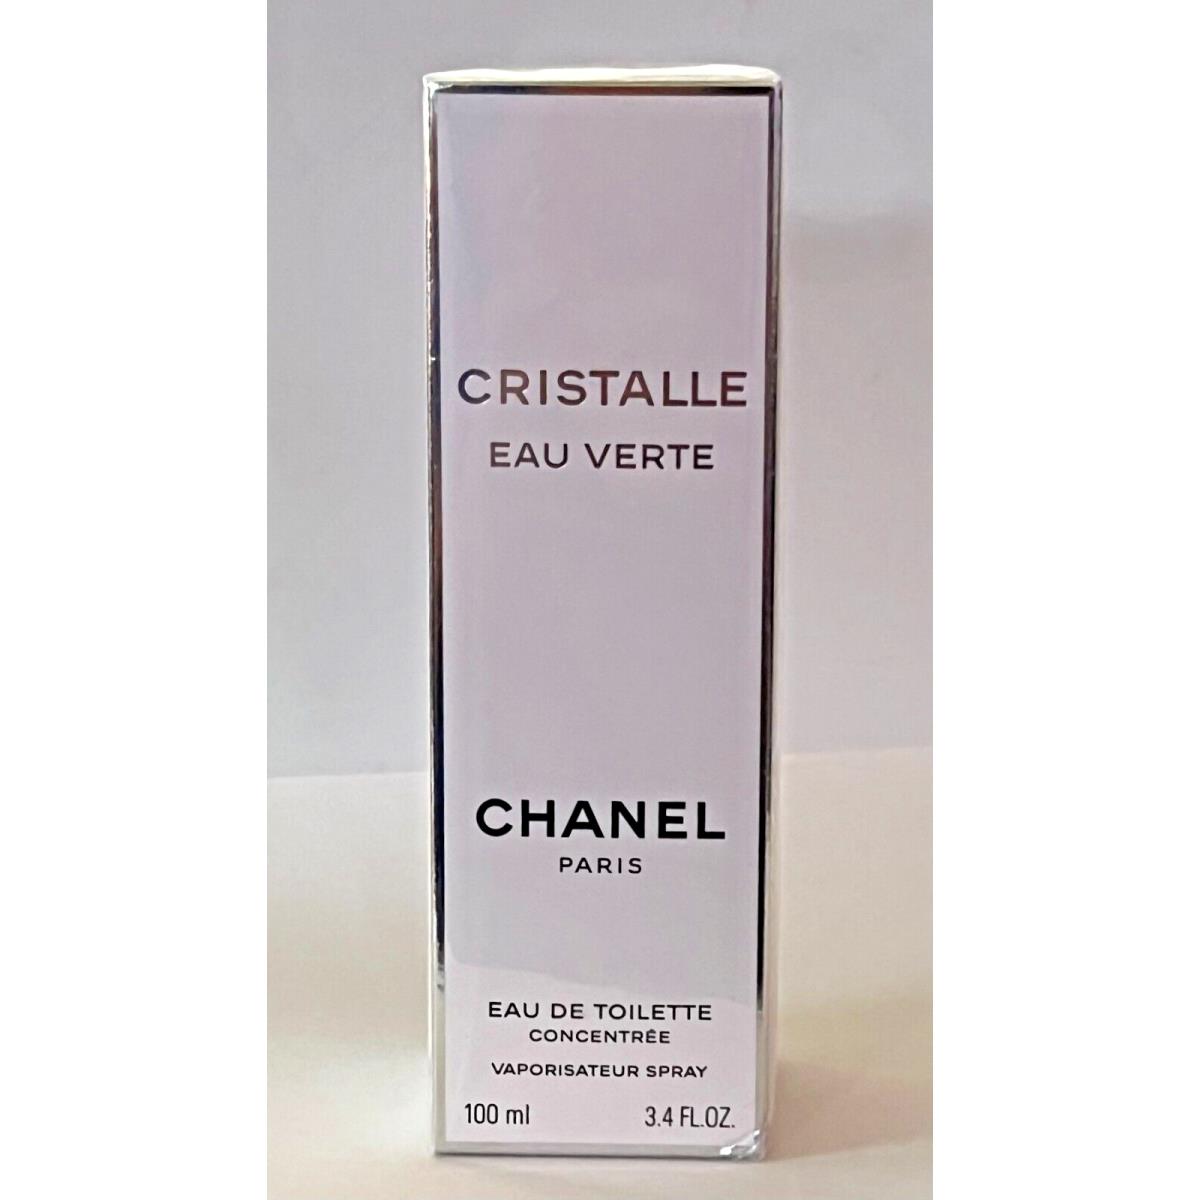 Chanel Cristalle Eau Verte Eau de Toilette Spray for Women, 3.4 oz